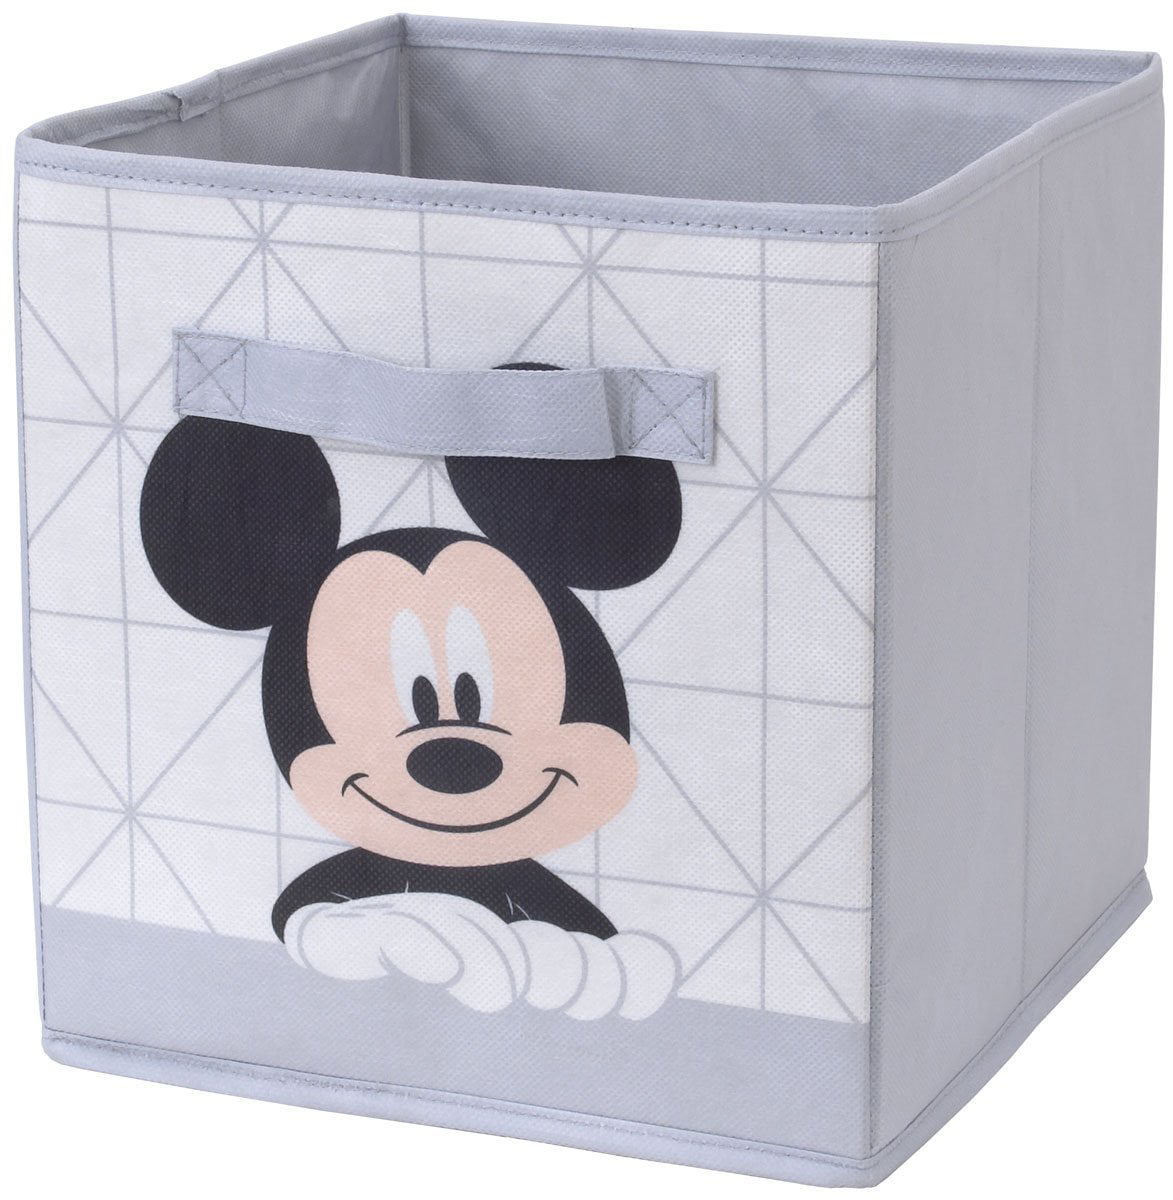 mickey mouse bin